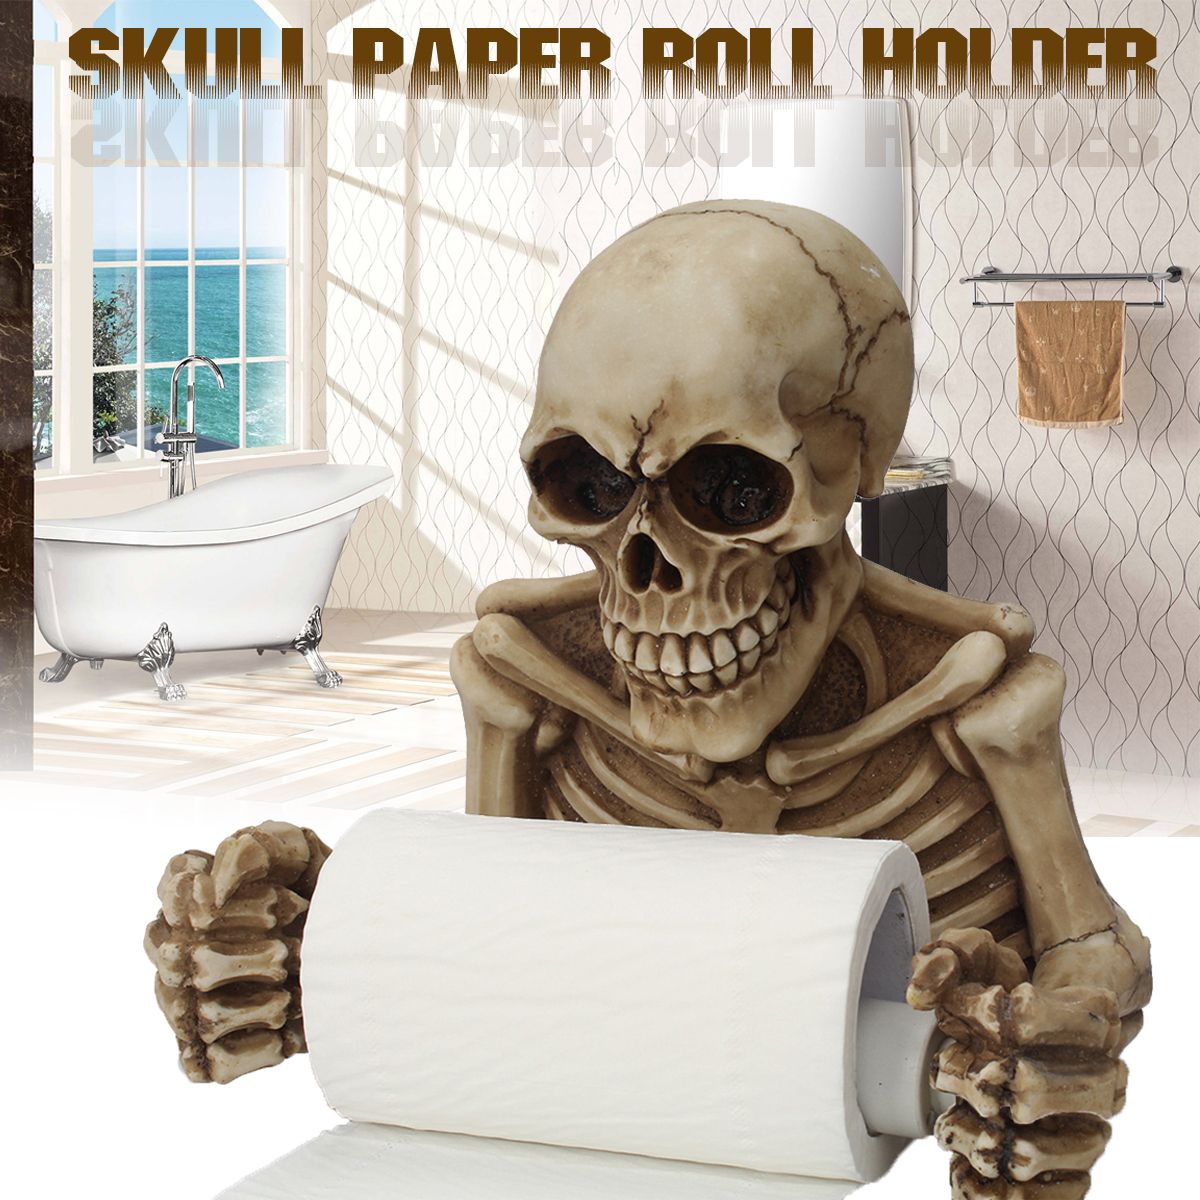 Skull-Paper-Roll-Holder-Wall-Mount-Toilet-Bone-Dry-Skeleton-Bathroom-Decorations-Paper-Shelf-Holder-1322605